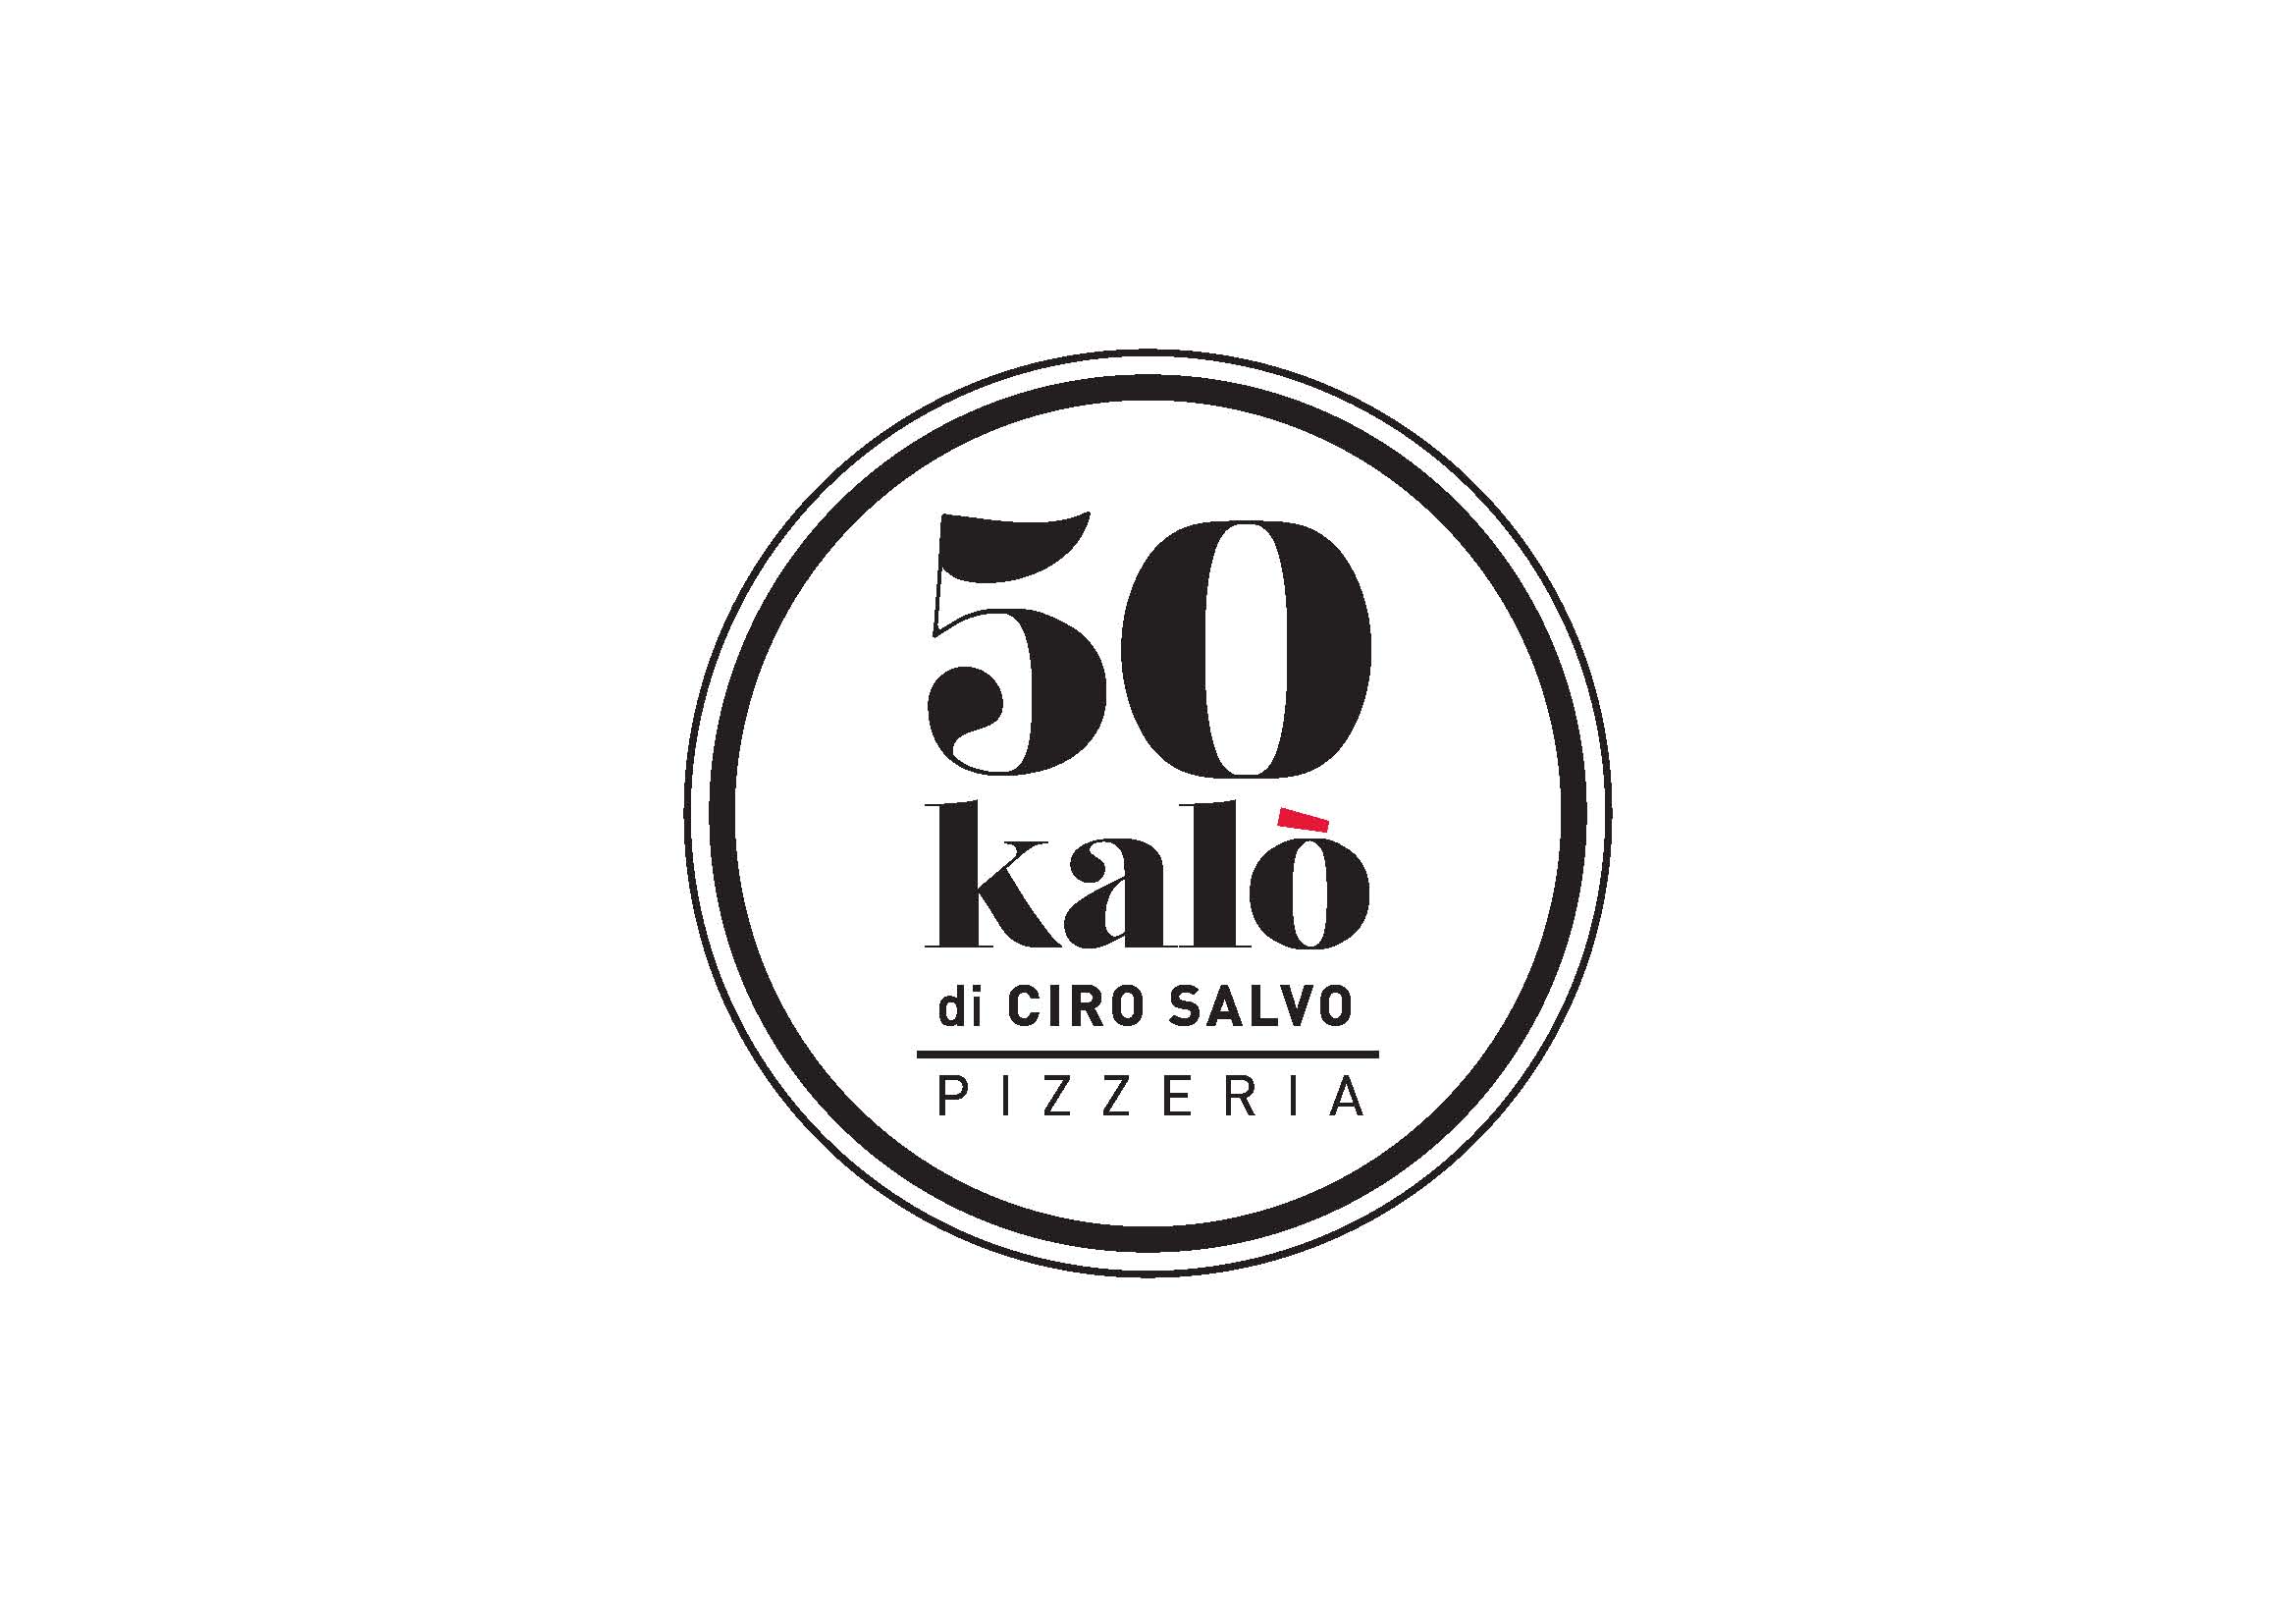  50 Kalò di Ciro Salvo: sulla pizza sapori decisi e ingredienti d’autore